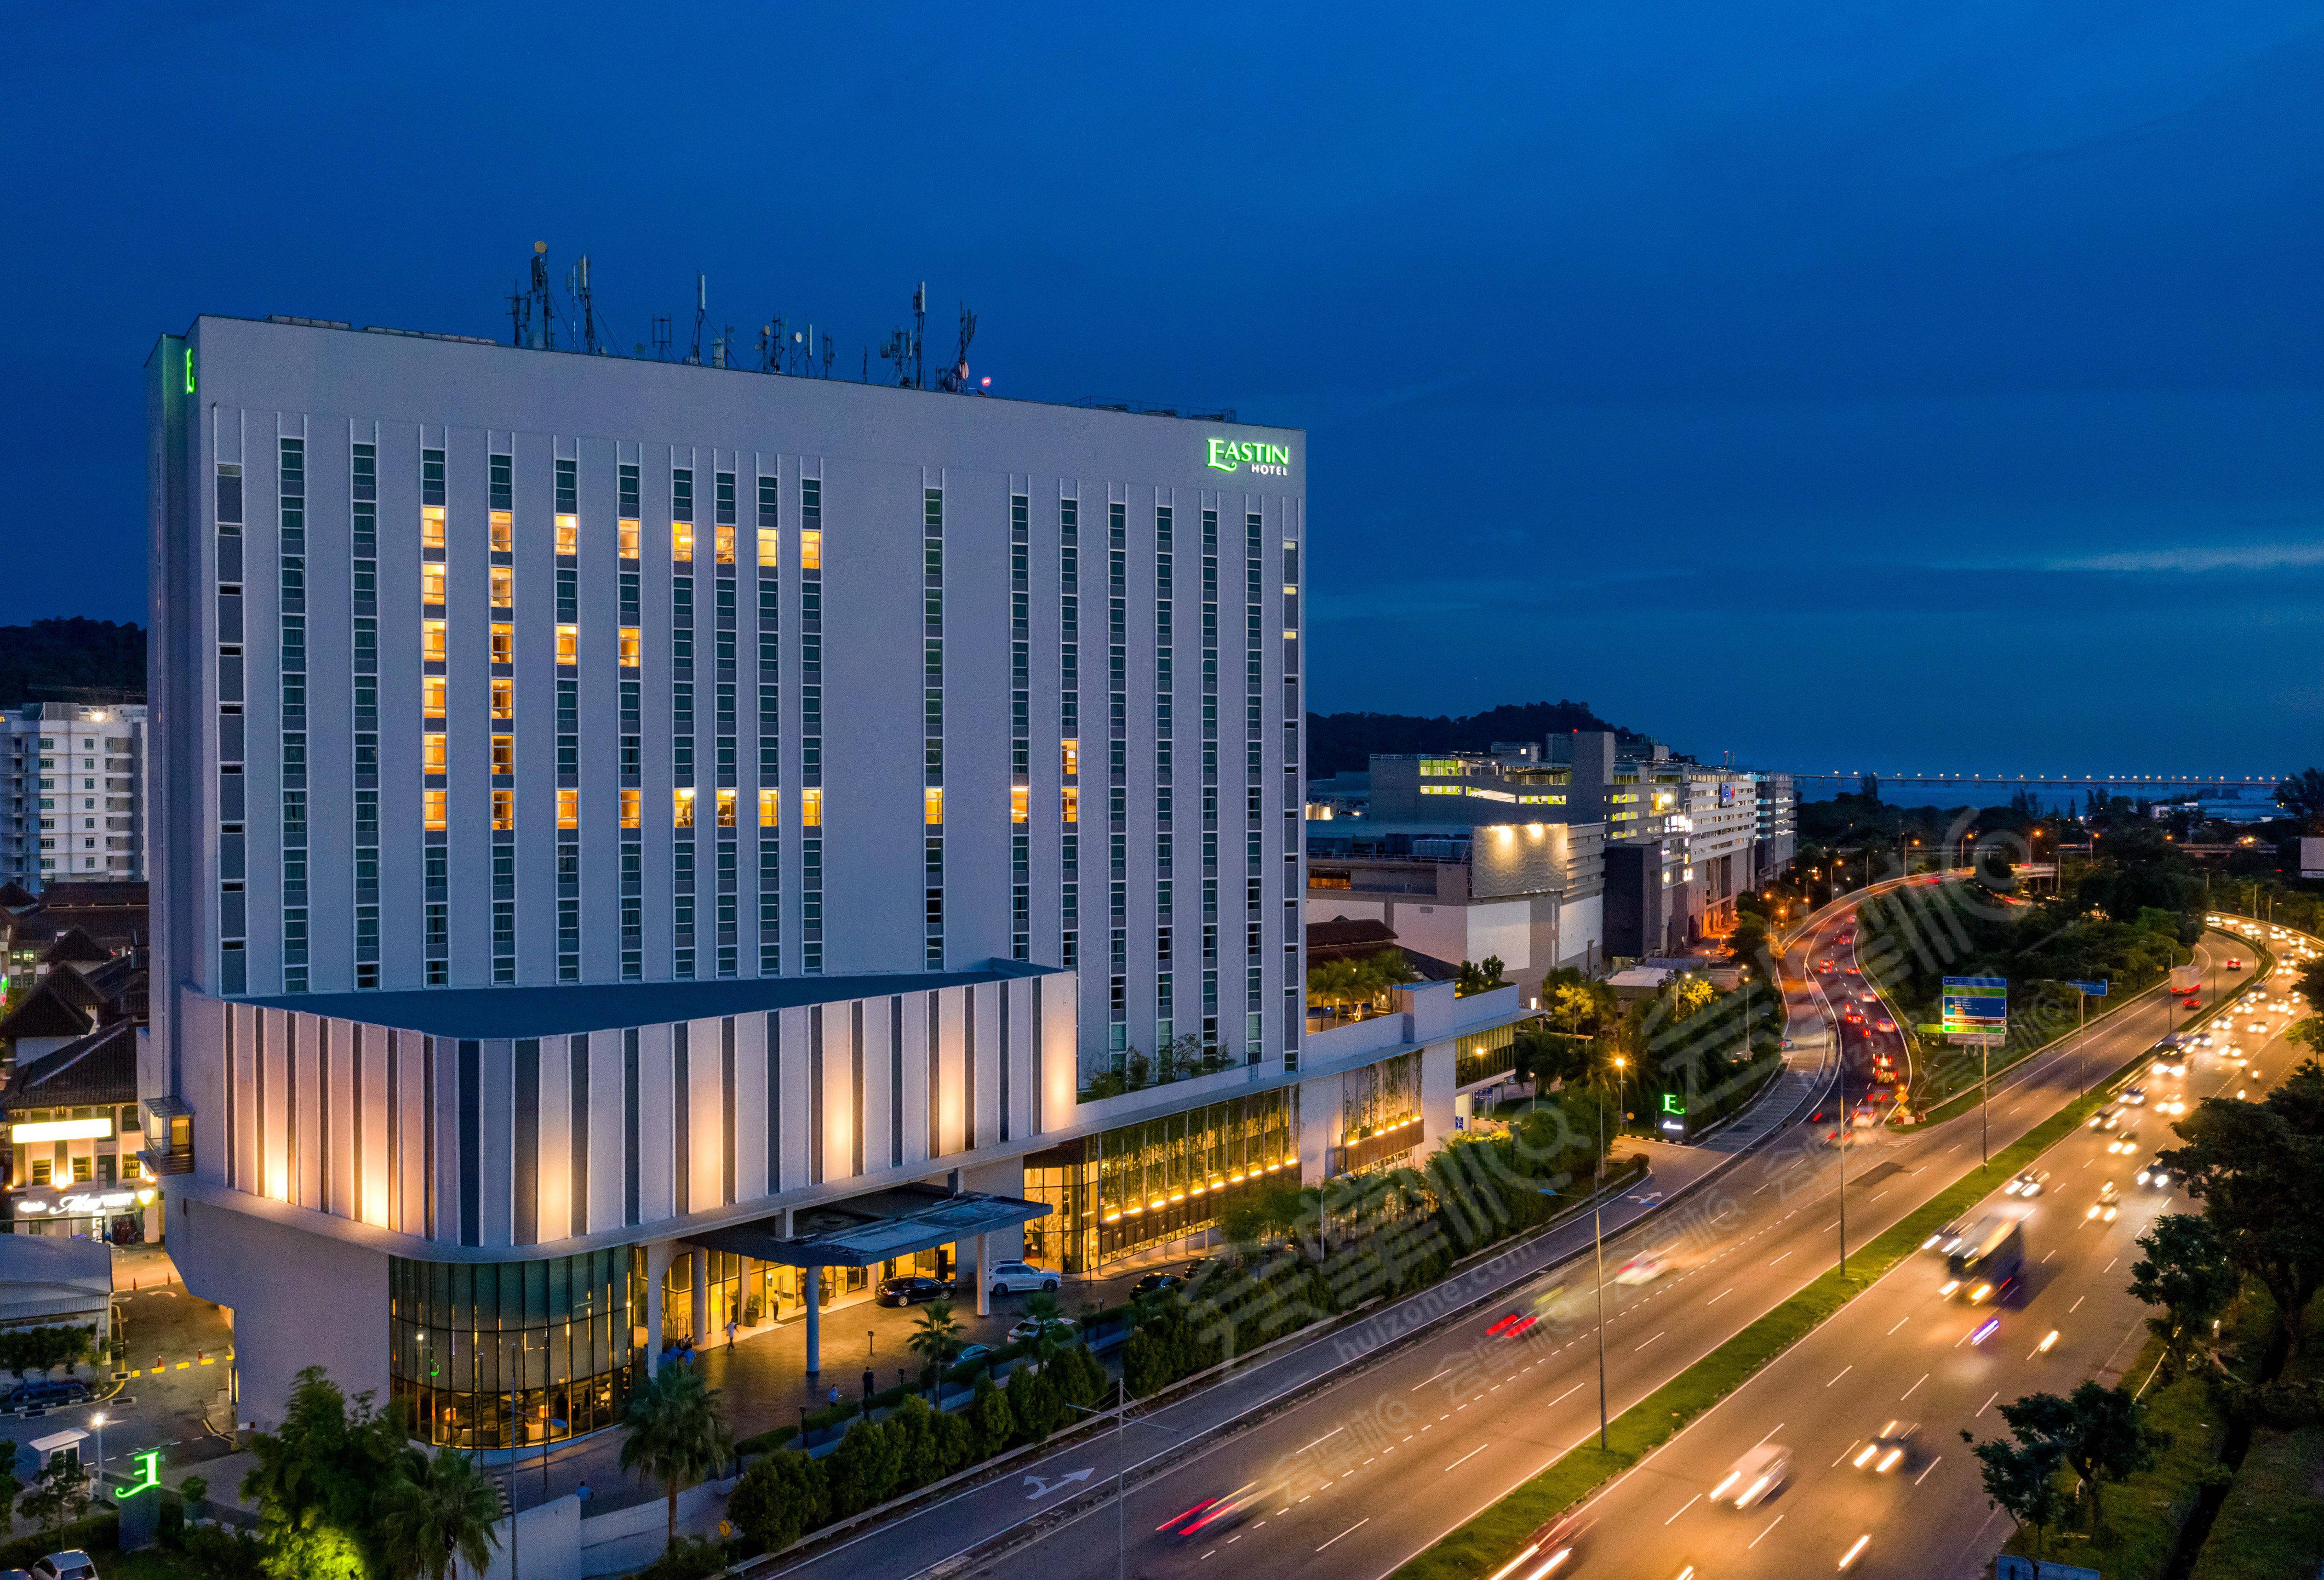 槟城四星级酒店最大容纳200人的会议场地|槟城颐思殿酒店 (槟城对抗新冠肺炎认证)(Eastin Hotel Penang)的价格与联系方式